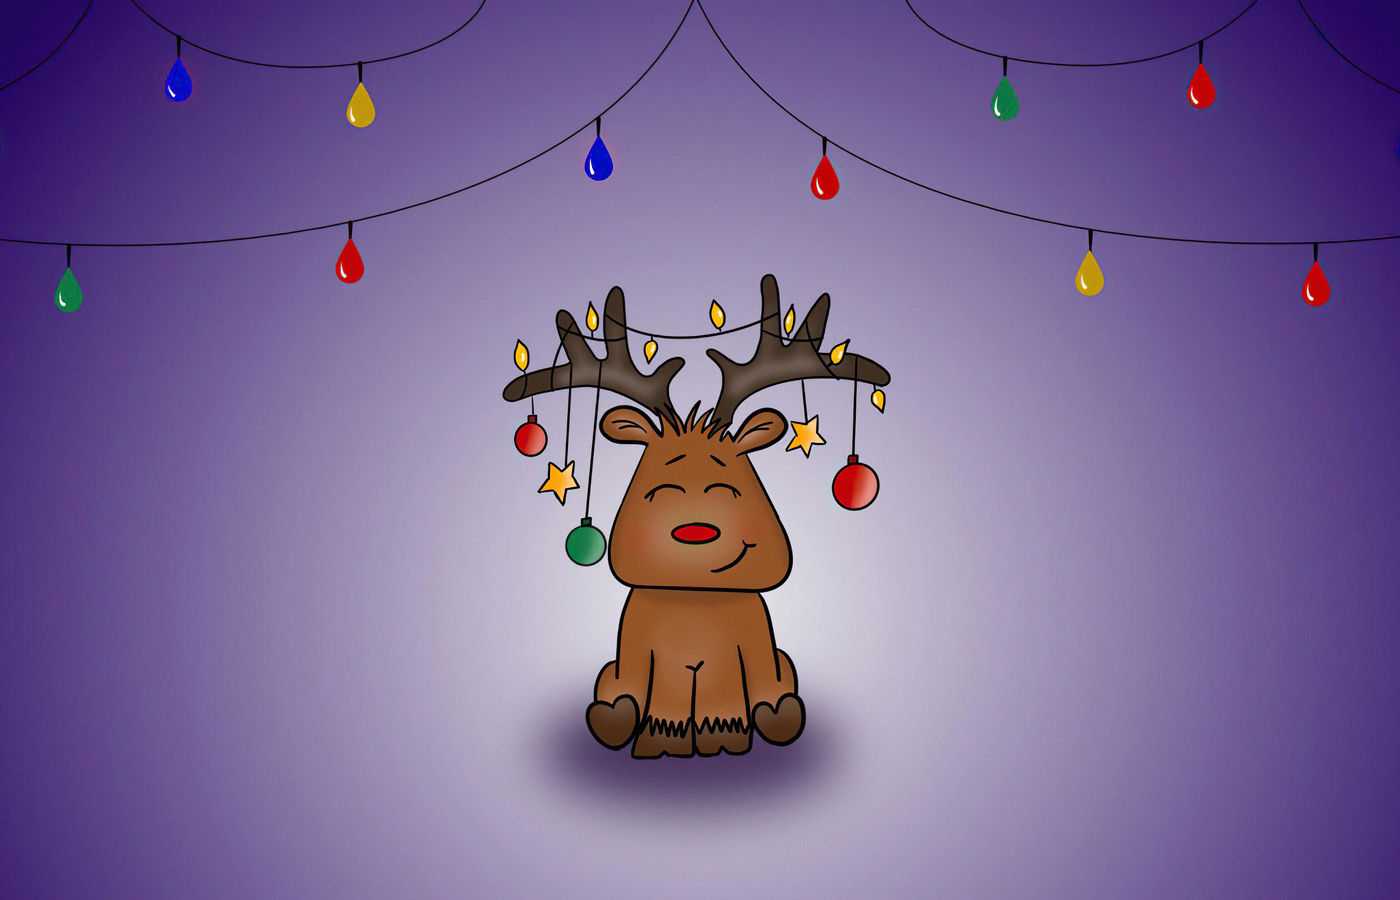 merry-christmas-reindeer-minimal-1c.jpg